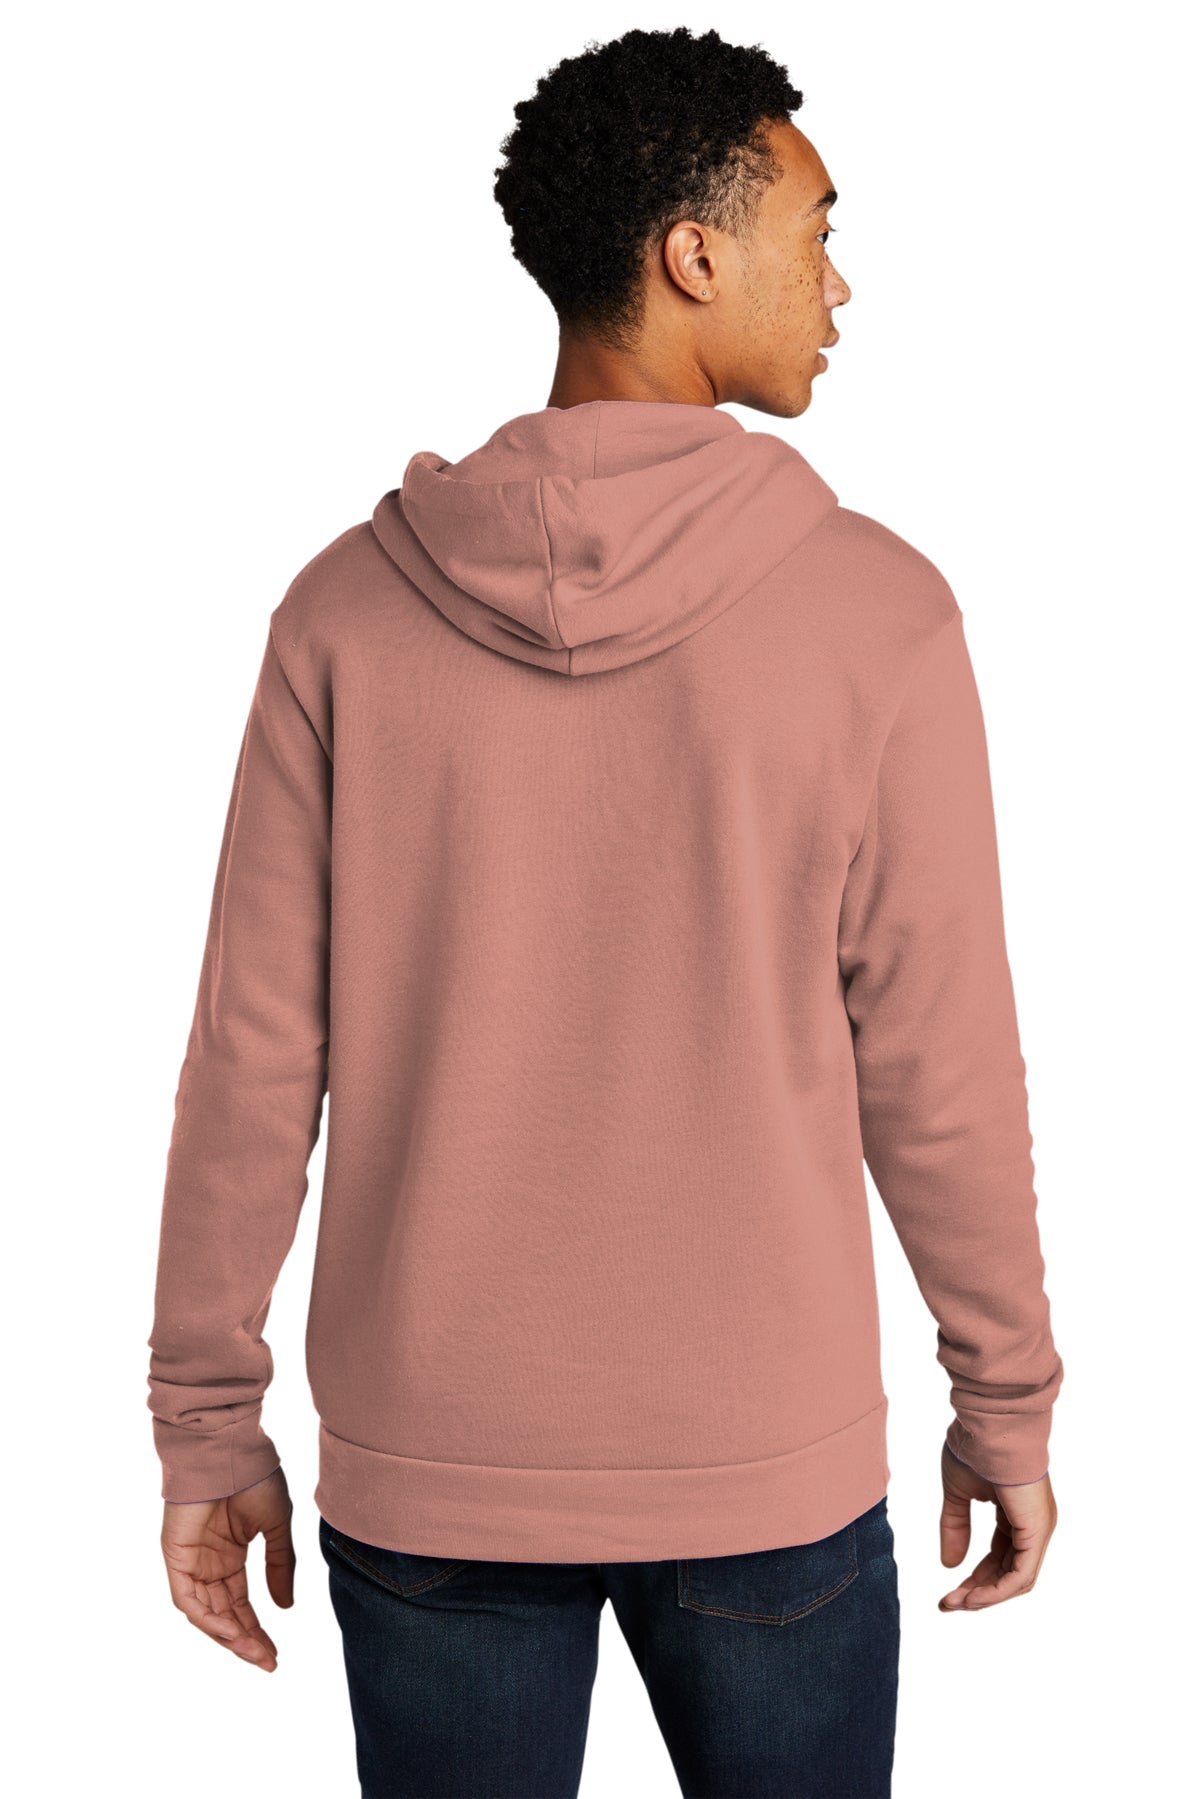 Next Level Unisex Beach Fleece Customized Hoodies, Desert Pink